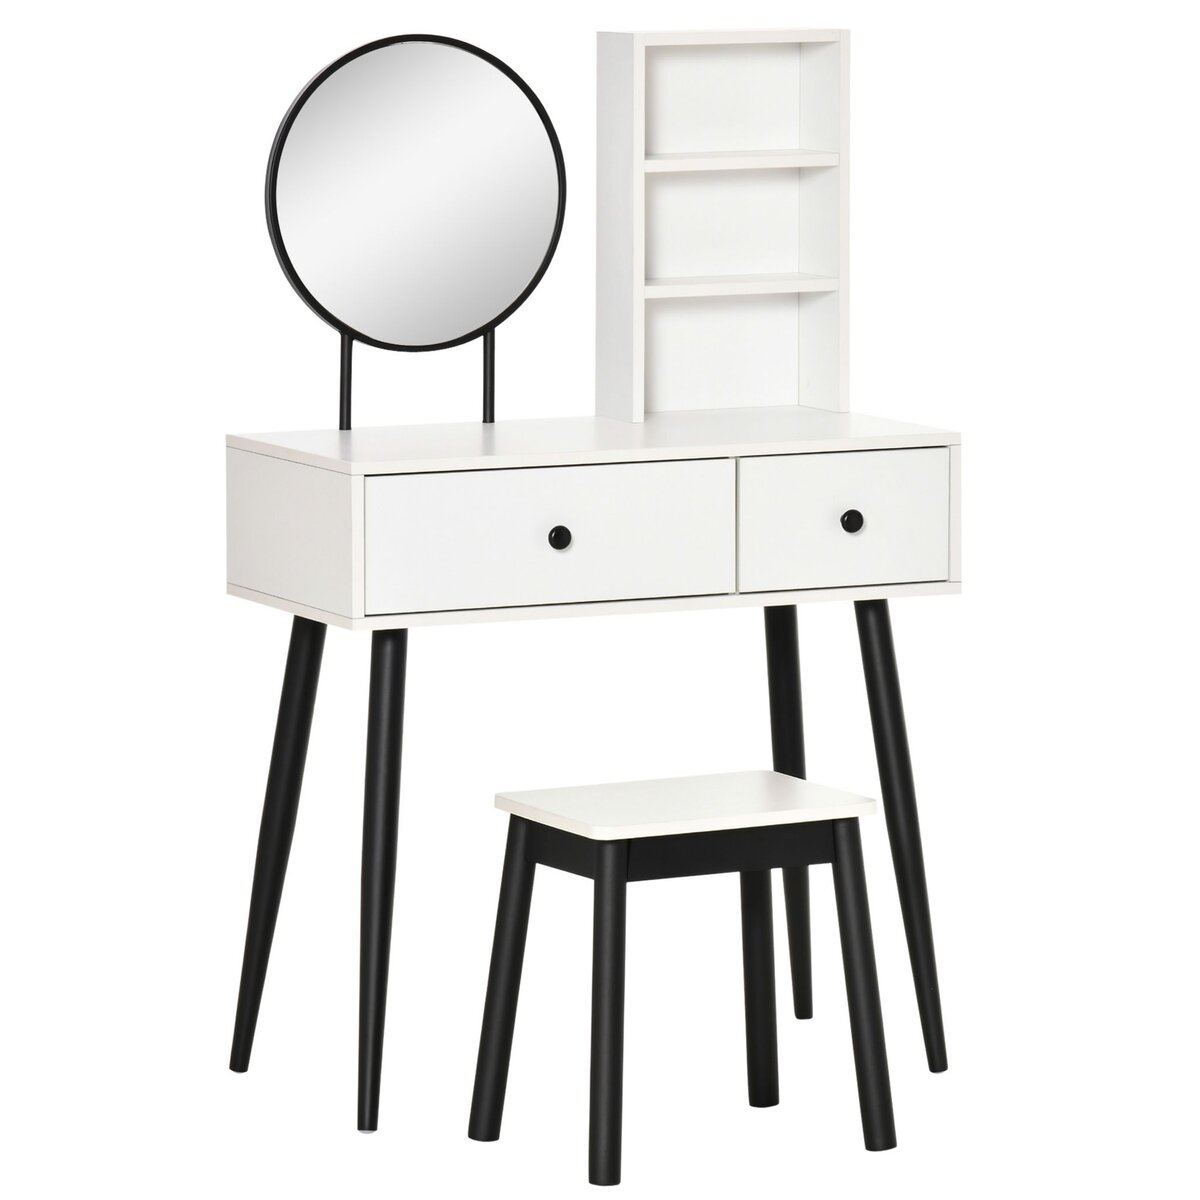 HOMCOM Coiffeuse avec tabouret miroir rond style contemporain - 2 tiroirs, 2 étagères - piètement hévéa noir panneaux particules blanc